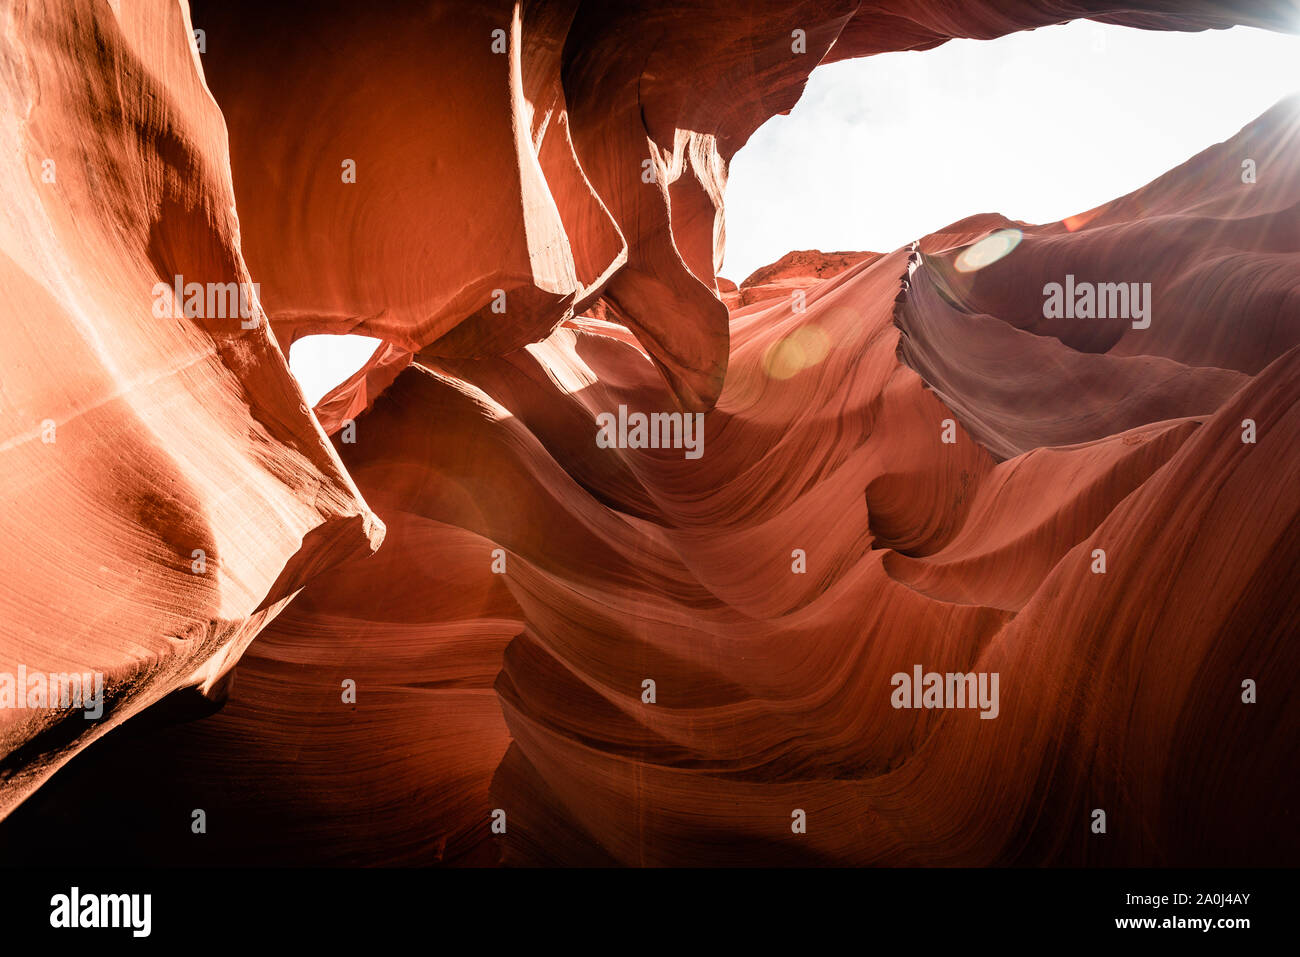 Lower Antelope Canyon Arizona USA Stock Photo